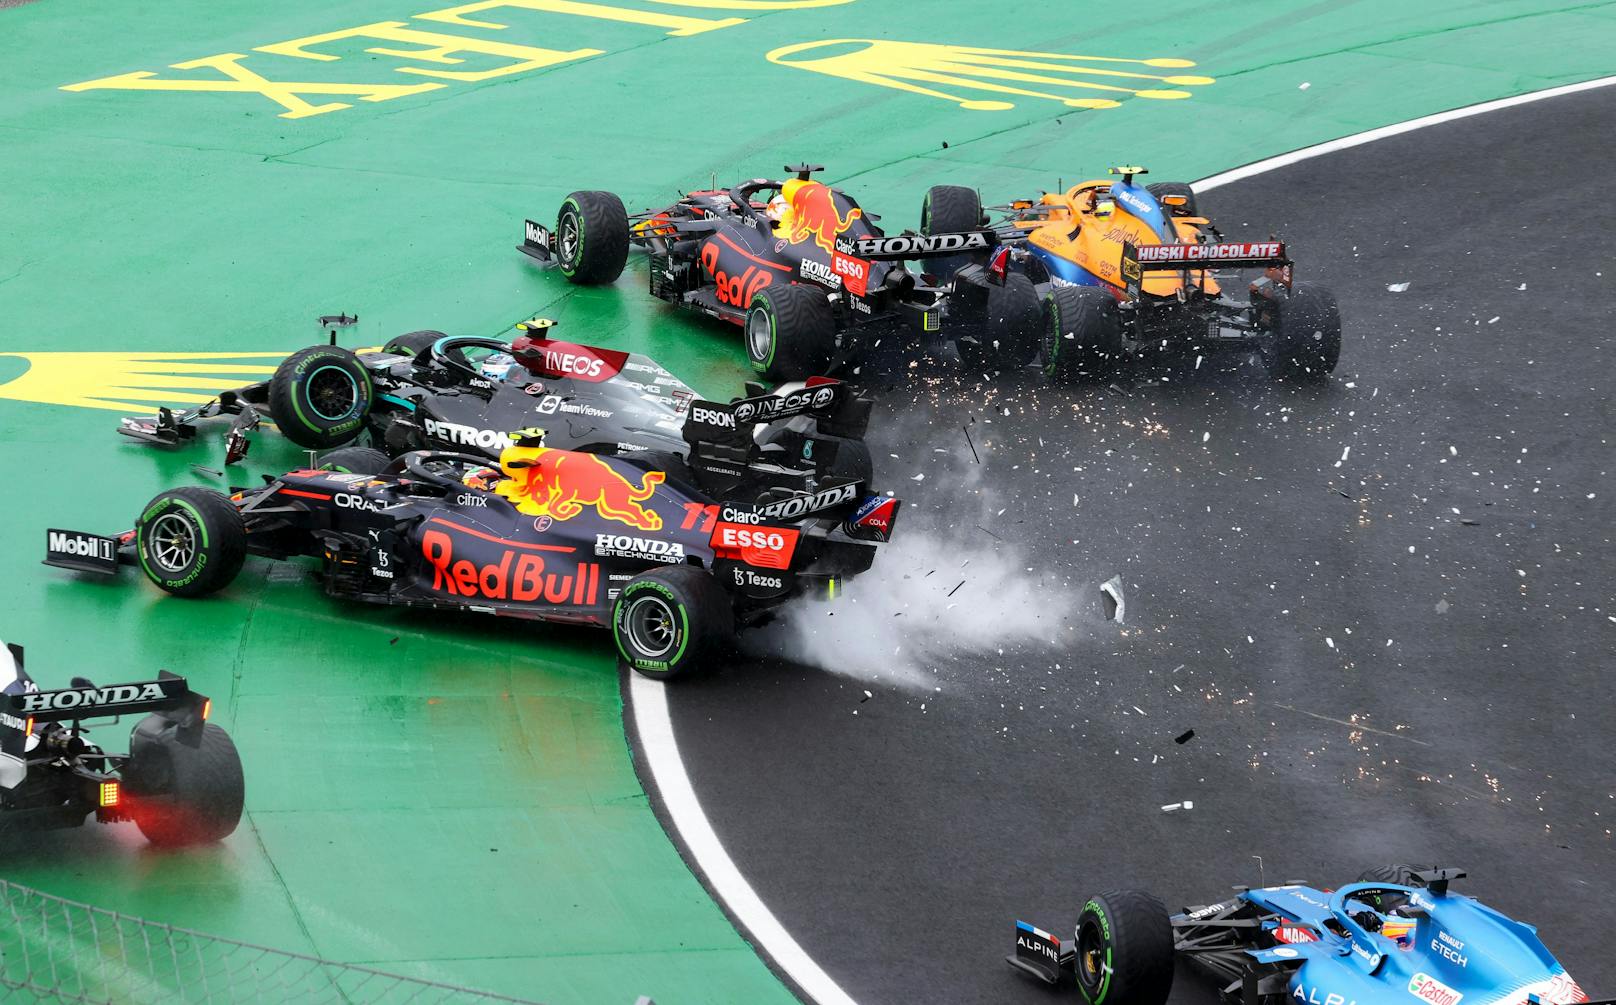 Chaos-Start am Hungaroring! Valtteri Bottas räumte im Regen von Budapest Lando Norris, Sergio Perez und Max Verstappen ab, Lance Stroll kickte Daniel Ricciardo und Charles Leclerc raus.